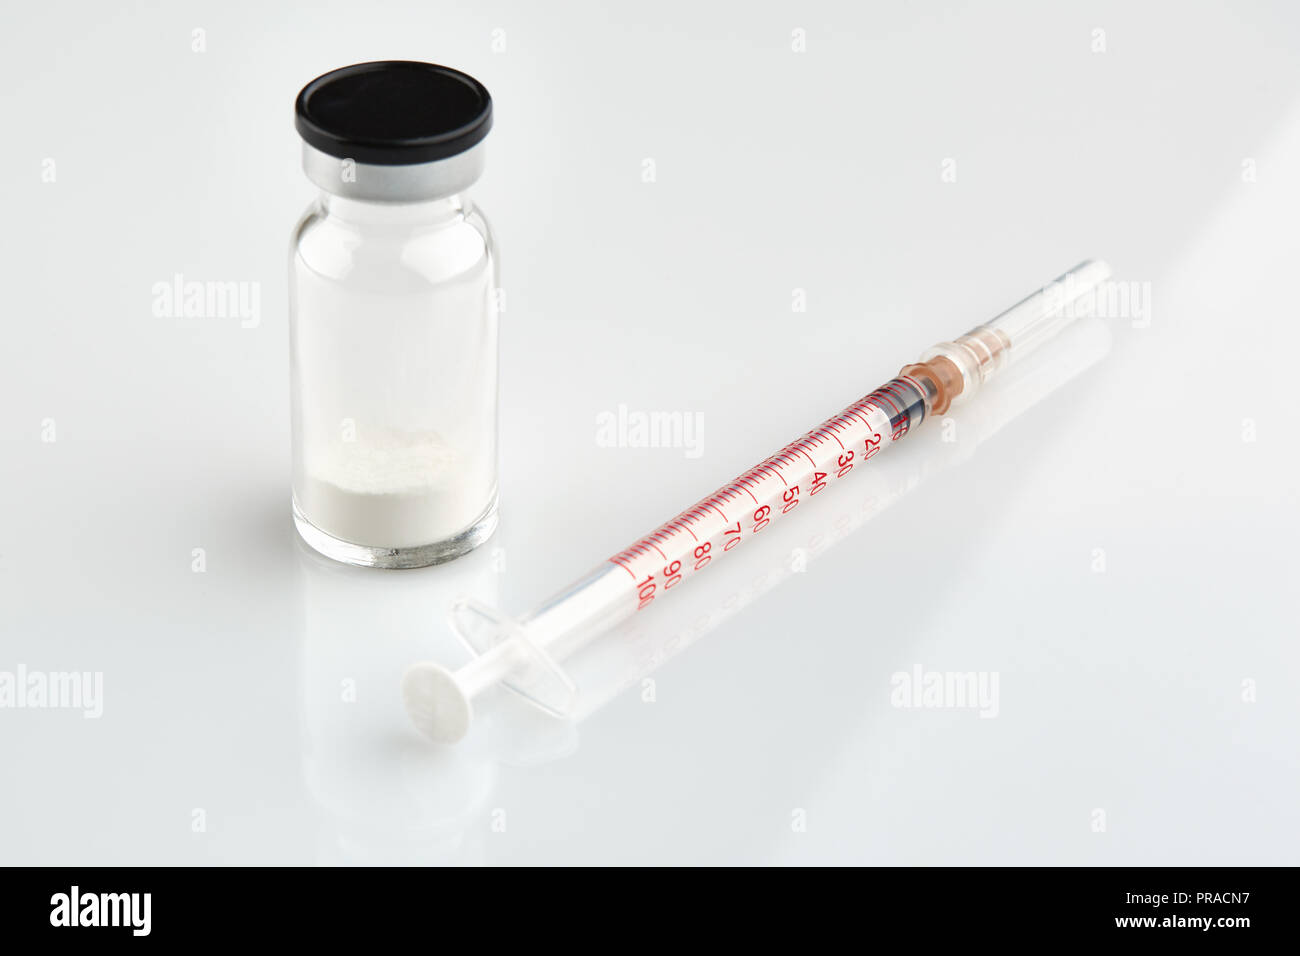 Small sealed bottle with medicine and syringe on white background. Stock Photo